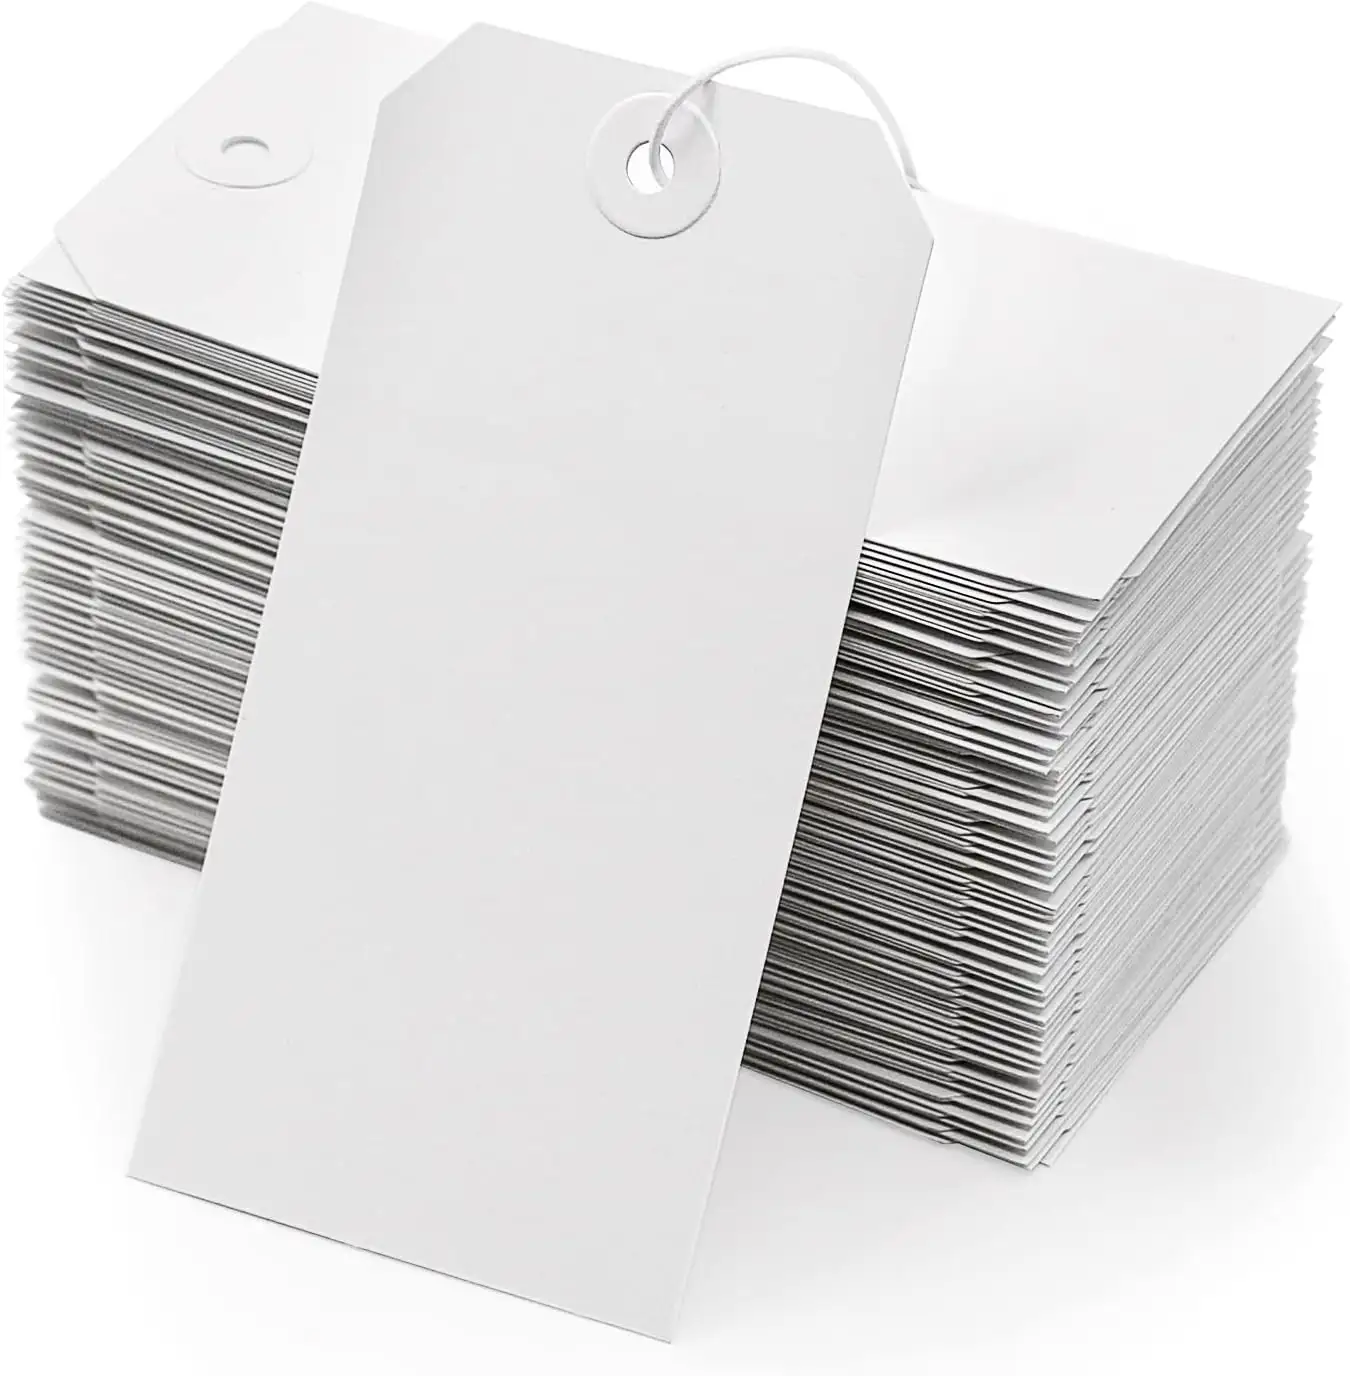 Thẻ Nhãn có thể tái chế với hộp dây của nhãn trống 100 có lỗ gia cố và dây kim loại, nhãn có dây